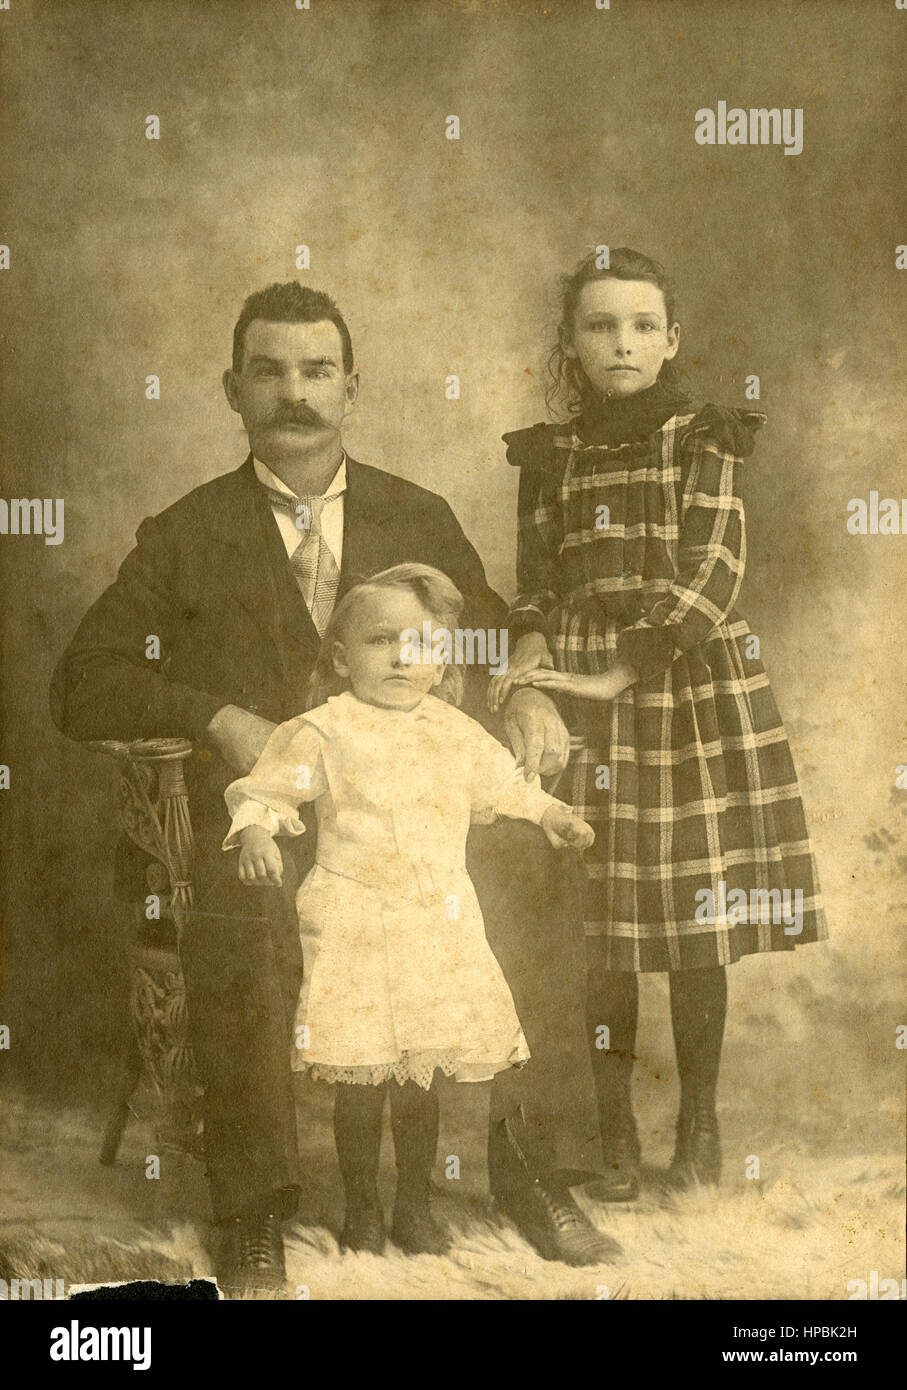 Antique c1890 fotografía, padre y dos hijas, de 4 y 9 años aproximadamente. Fuente: impresión fotográfica original. Foto de stock